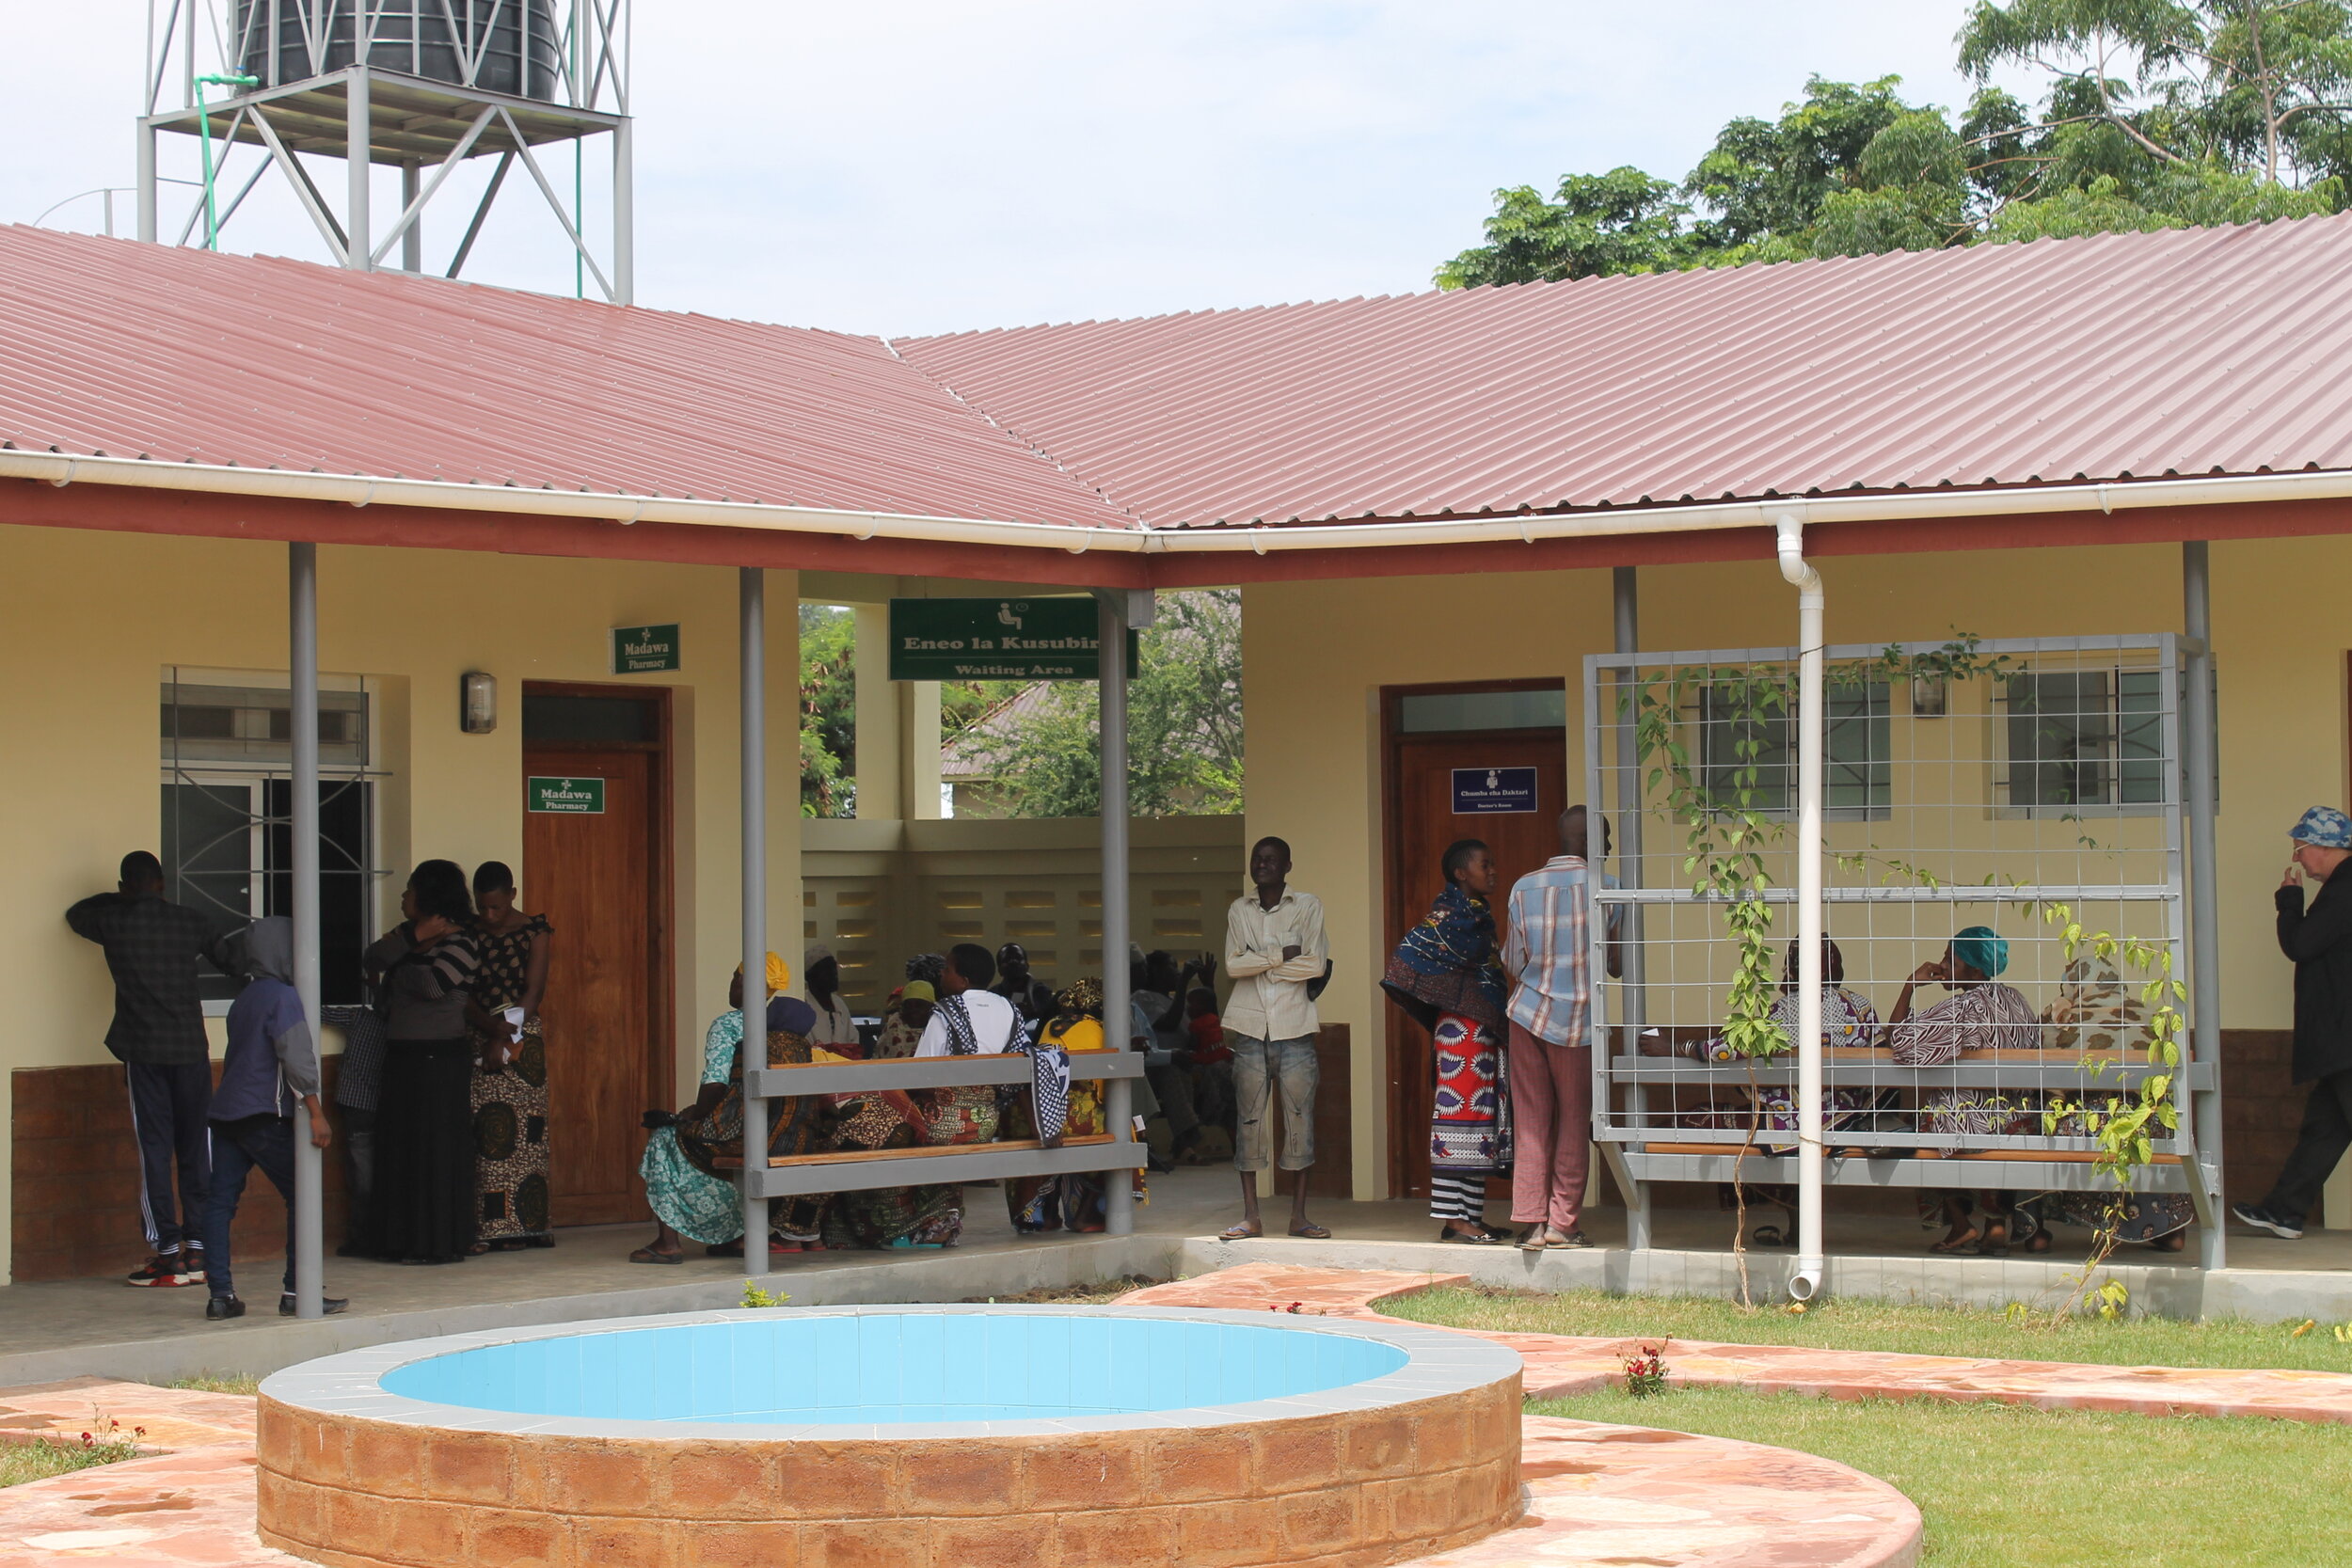 Small-scale hospital in Tanzania